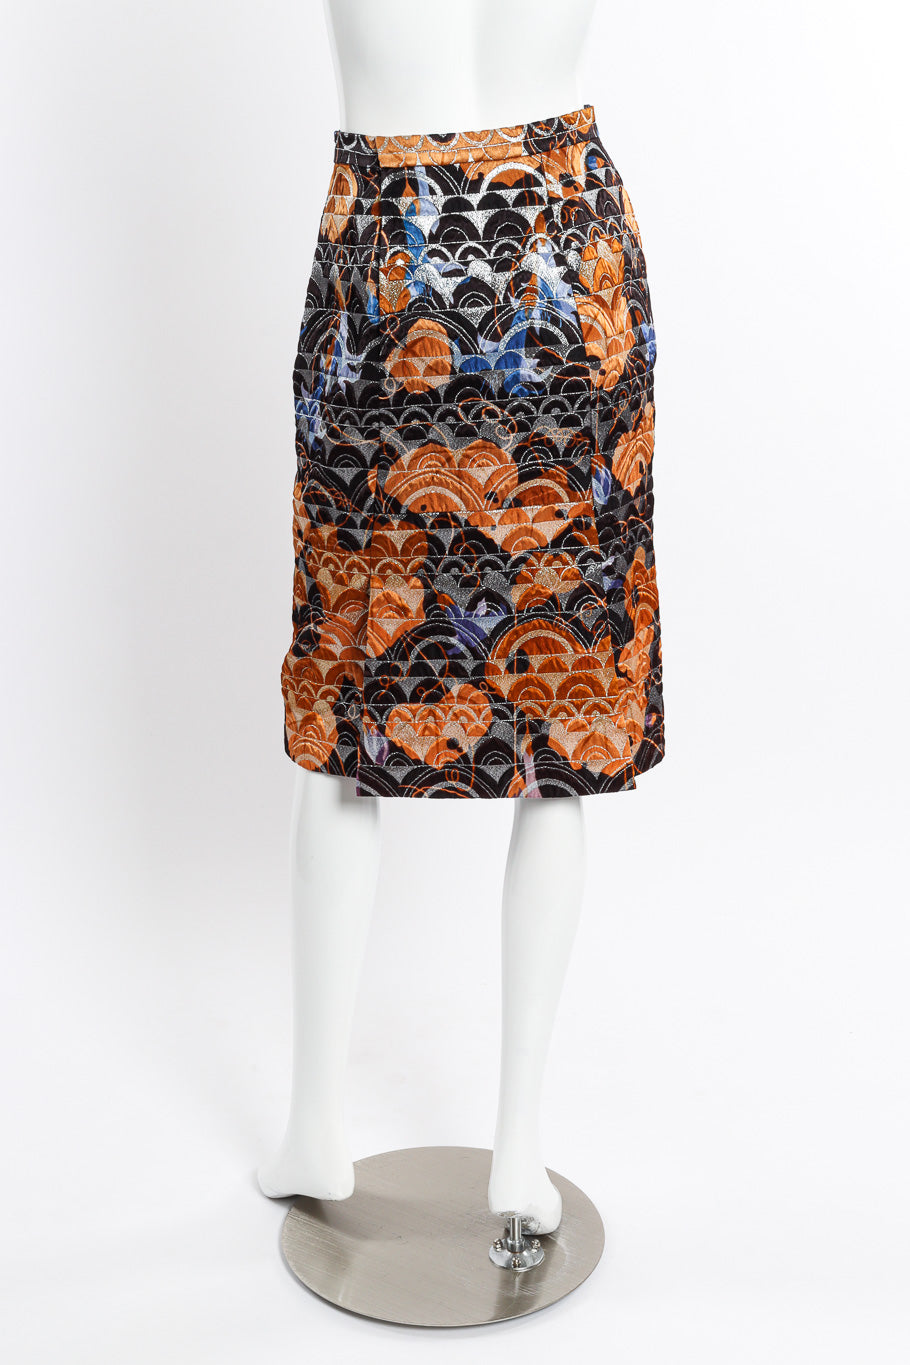 Vintage Mink Cuff Jacket and Skirt Set skirt back on mannequin @recessla